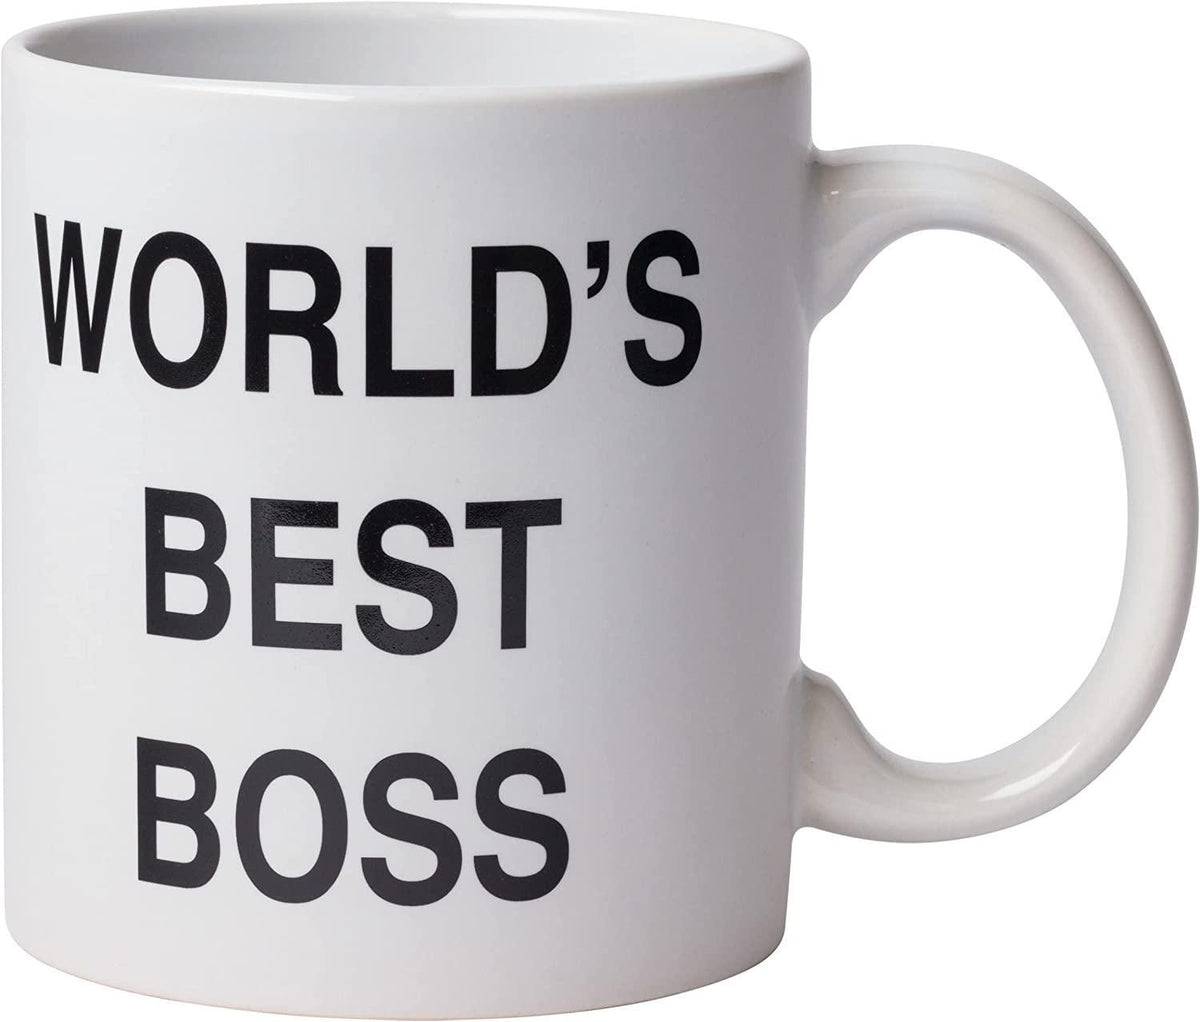 World's Best Boss mug